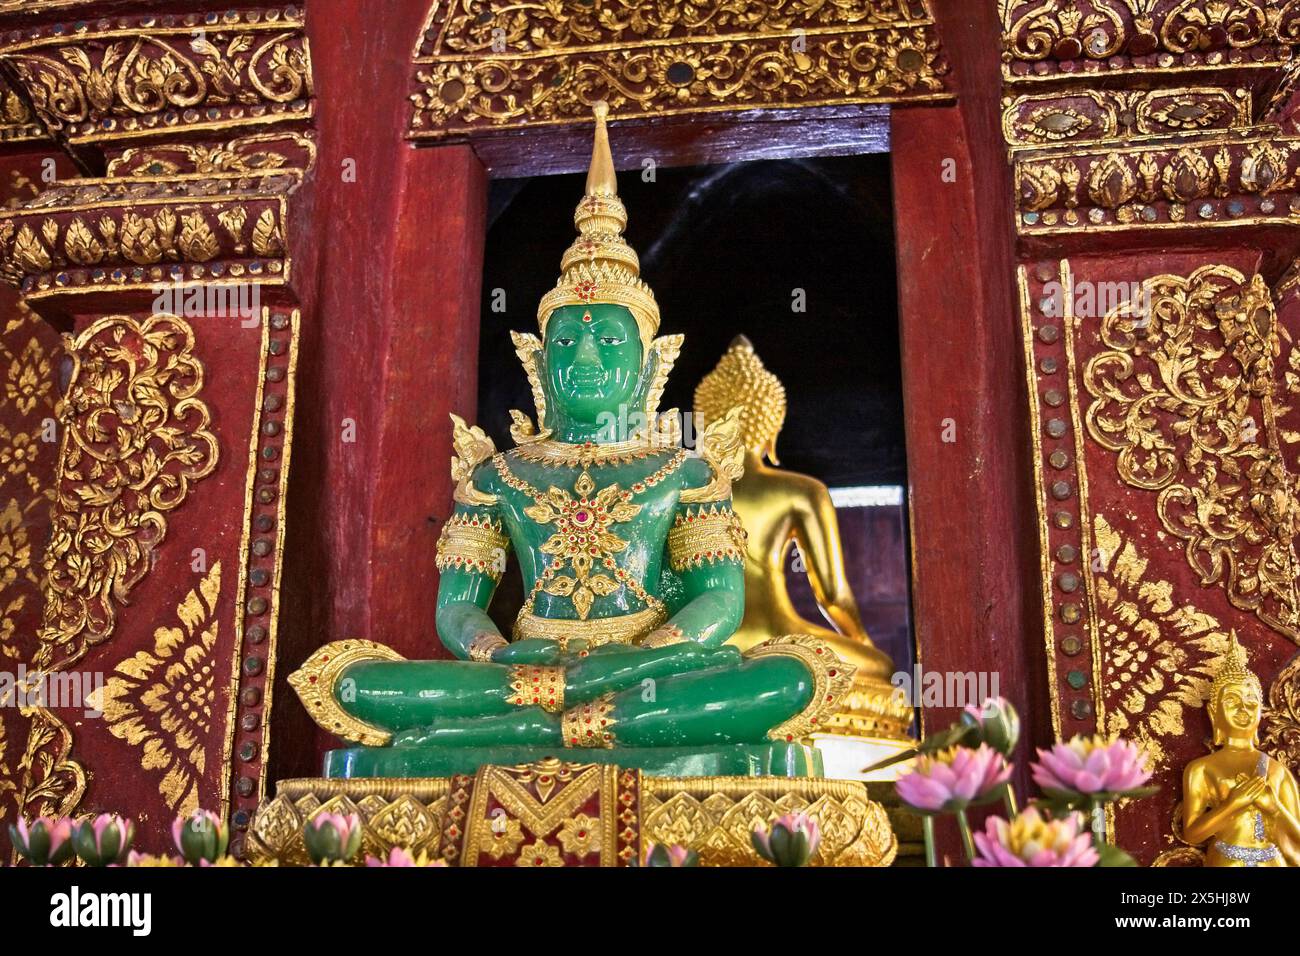 La Thaïlande, Chiang Mai, Prathat Doi Suthep temple (Wat Prathat Doi Suthep), statue du Bouddha d'émeraude (jade) Banque D'Images